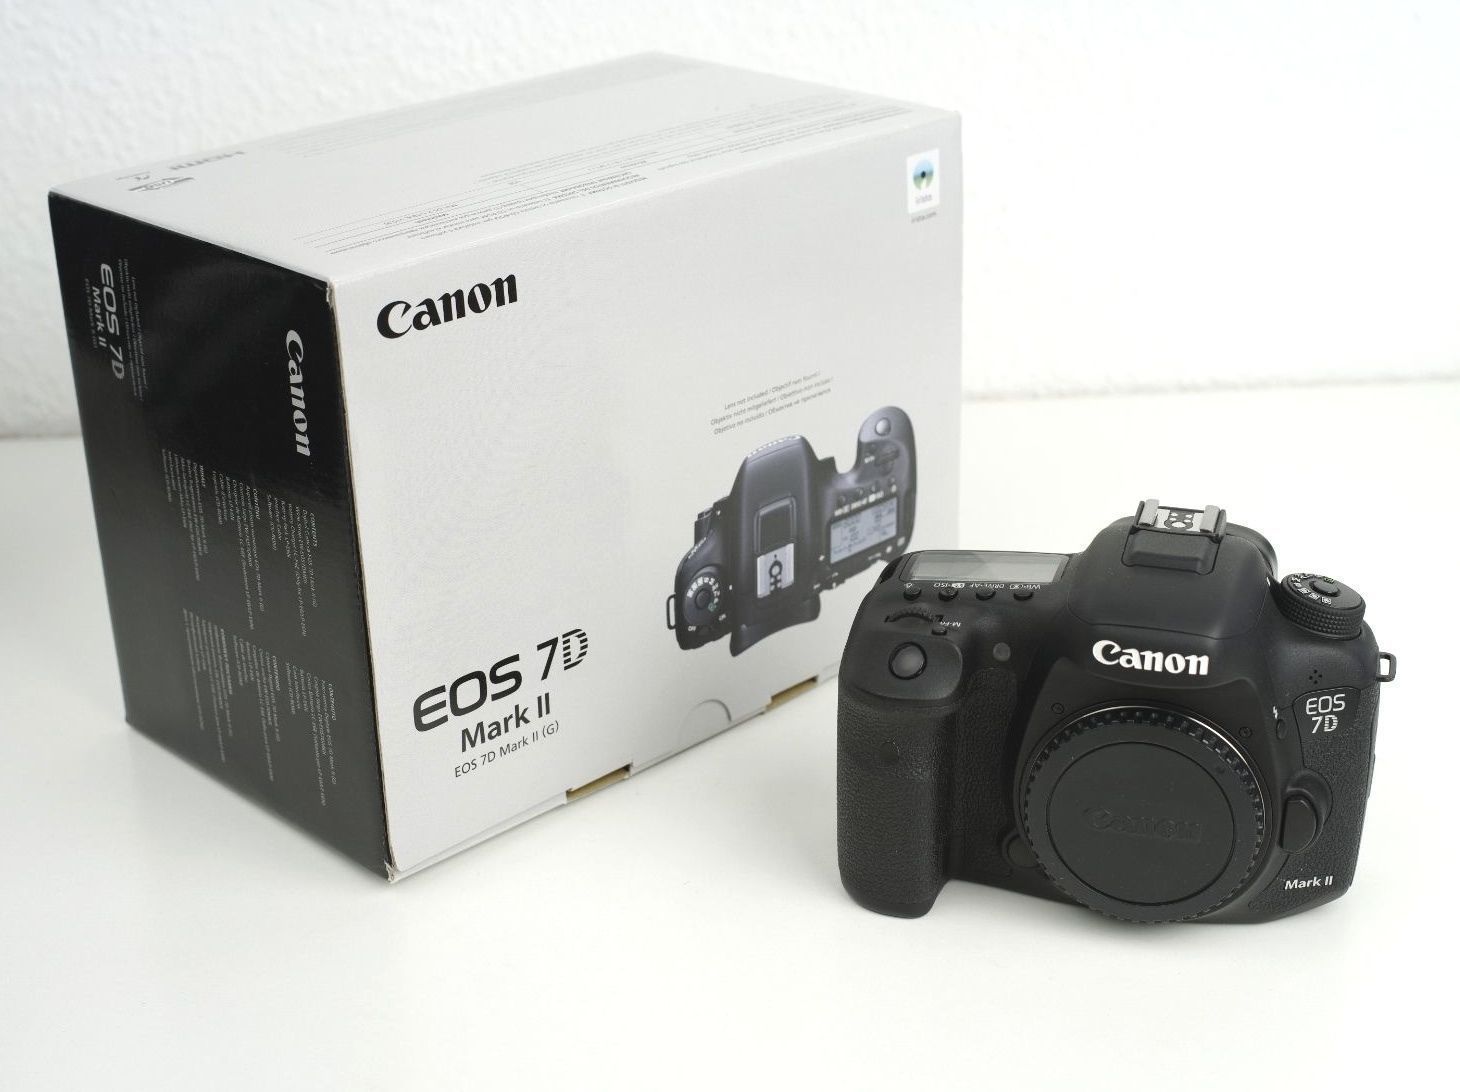 Canon EOS 7D Mark II 20.2MP Digitalkamera - nagelneu mit Rechnung,Garantie & OVP